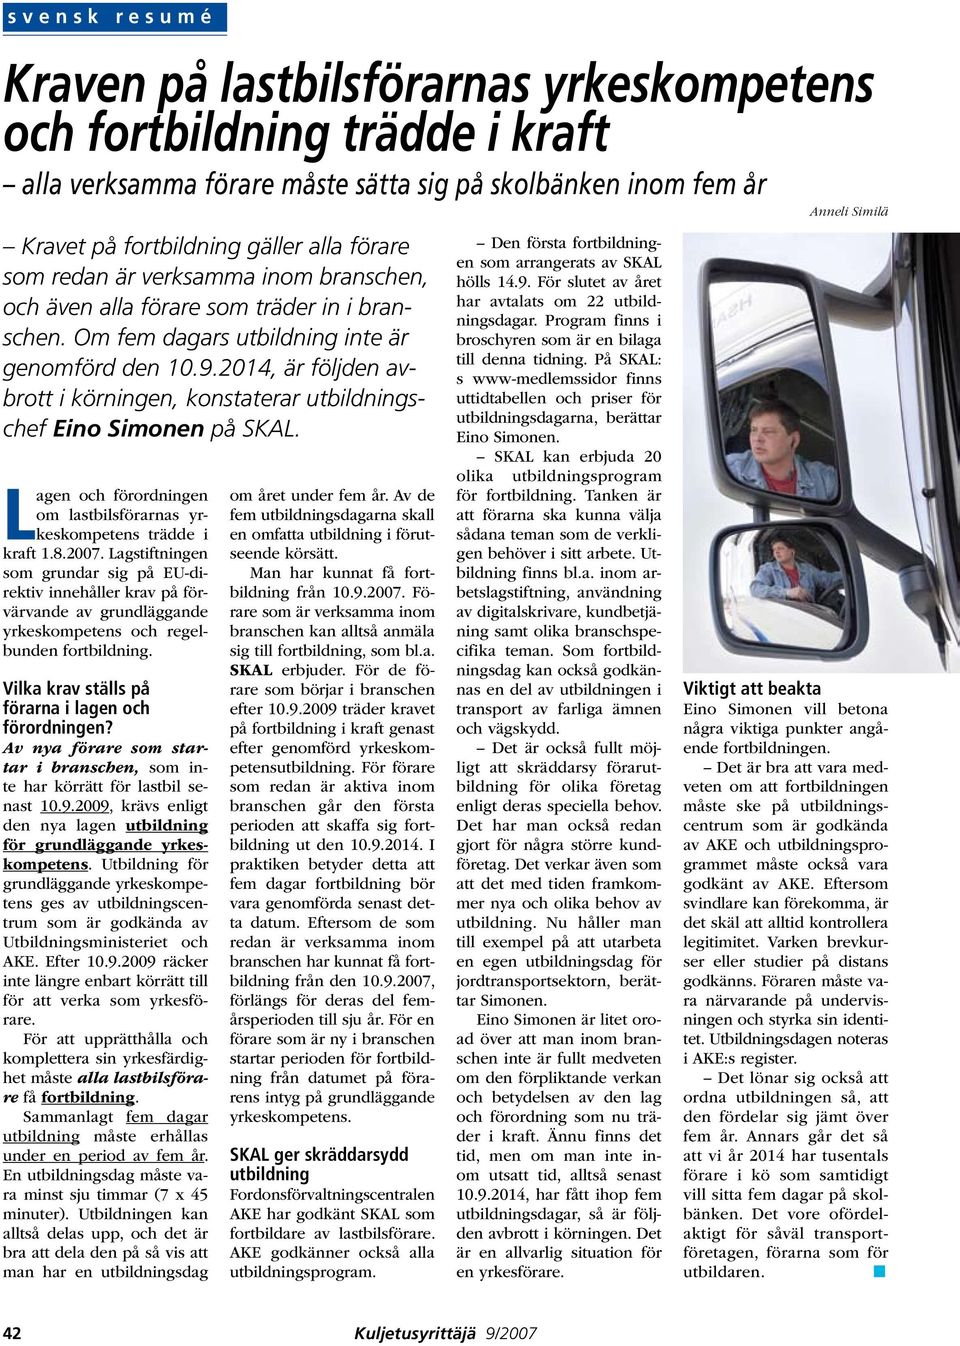 2014, är följden avbrott i körningen, konstaterar utbildningschef Eino Simonen på SKAL. Lagen och förordningen om lastbilsförarnas yrkeskompetens trädde i kraft 1.8.2007.